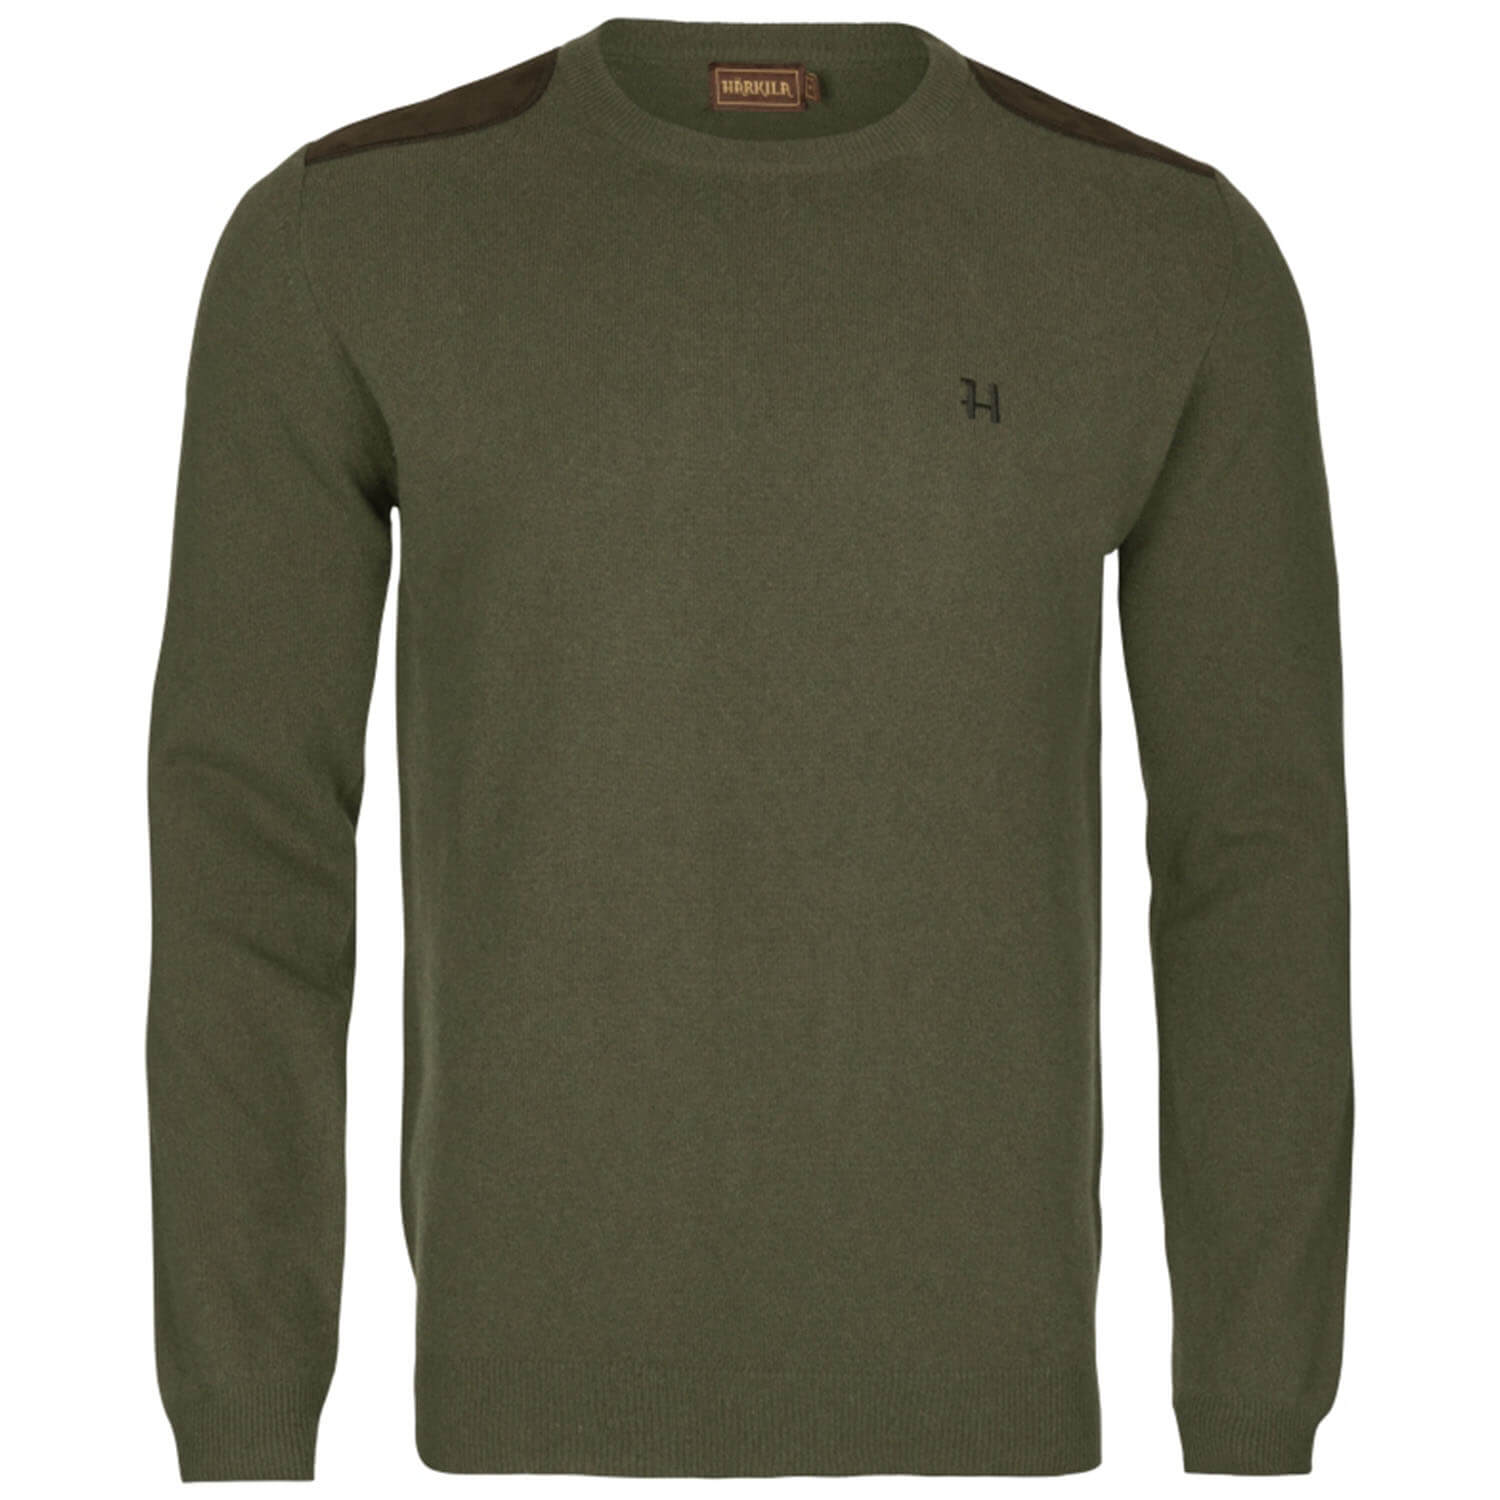 Härkila pullover arran (olive) - Sweaters & Jerseys